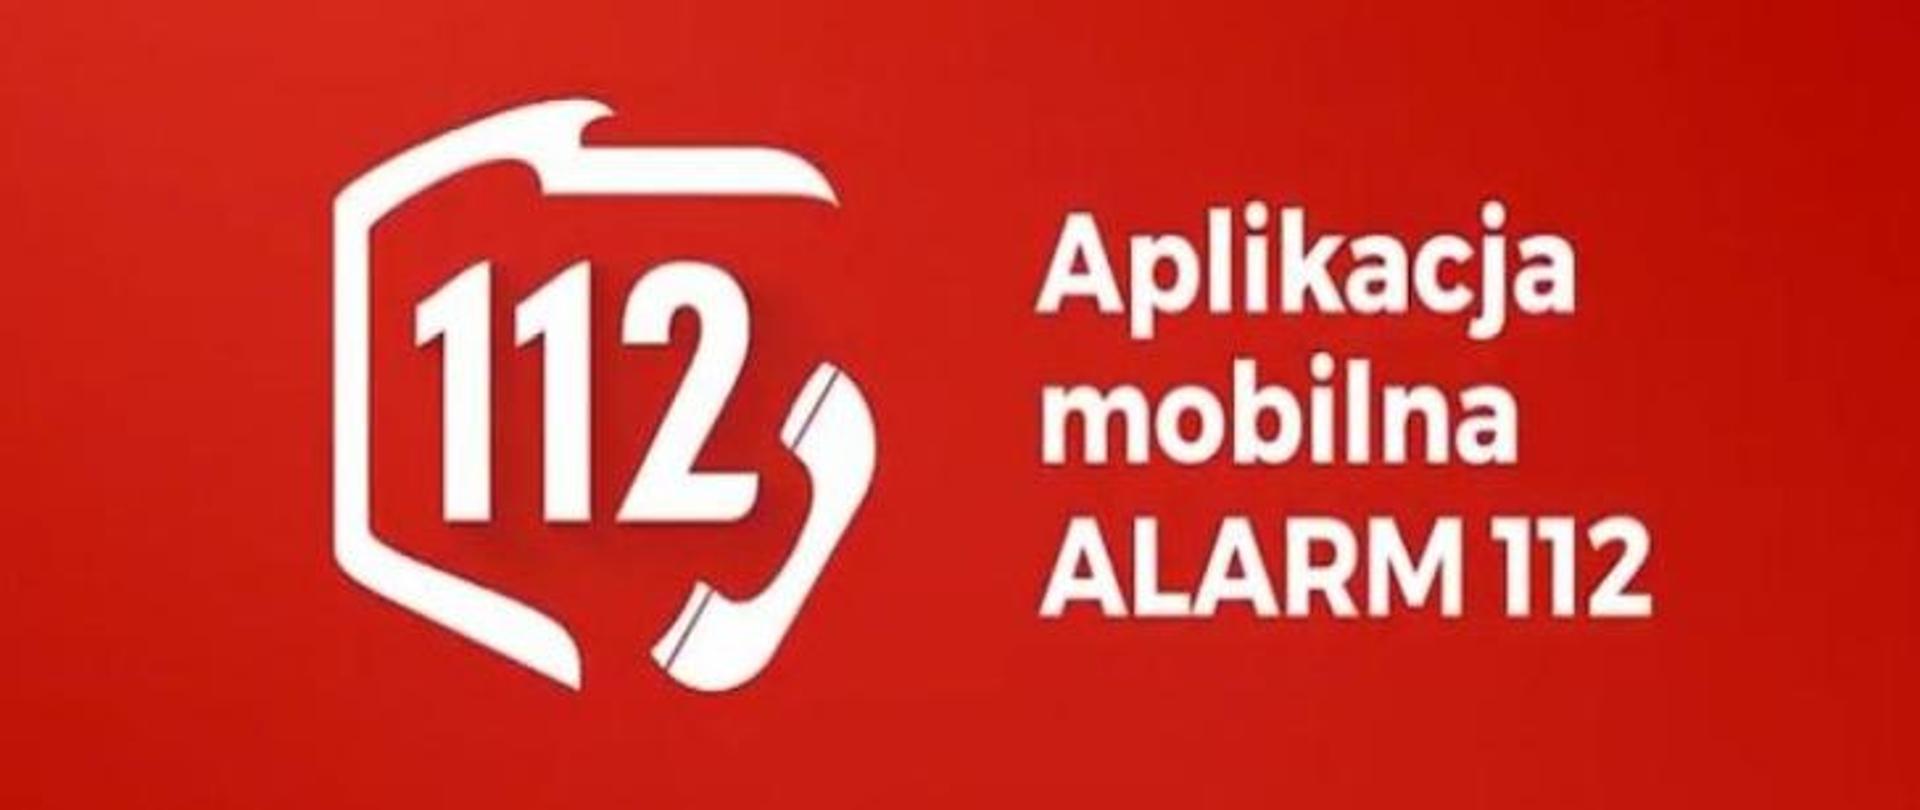 Aplikacja mobilna 112